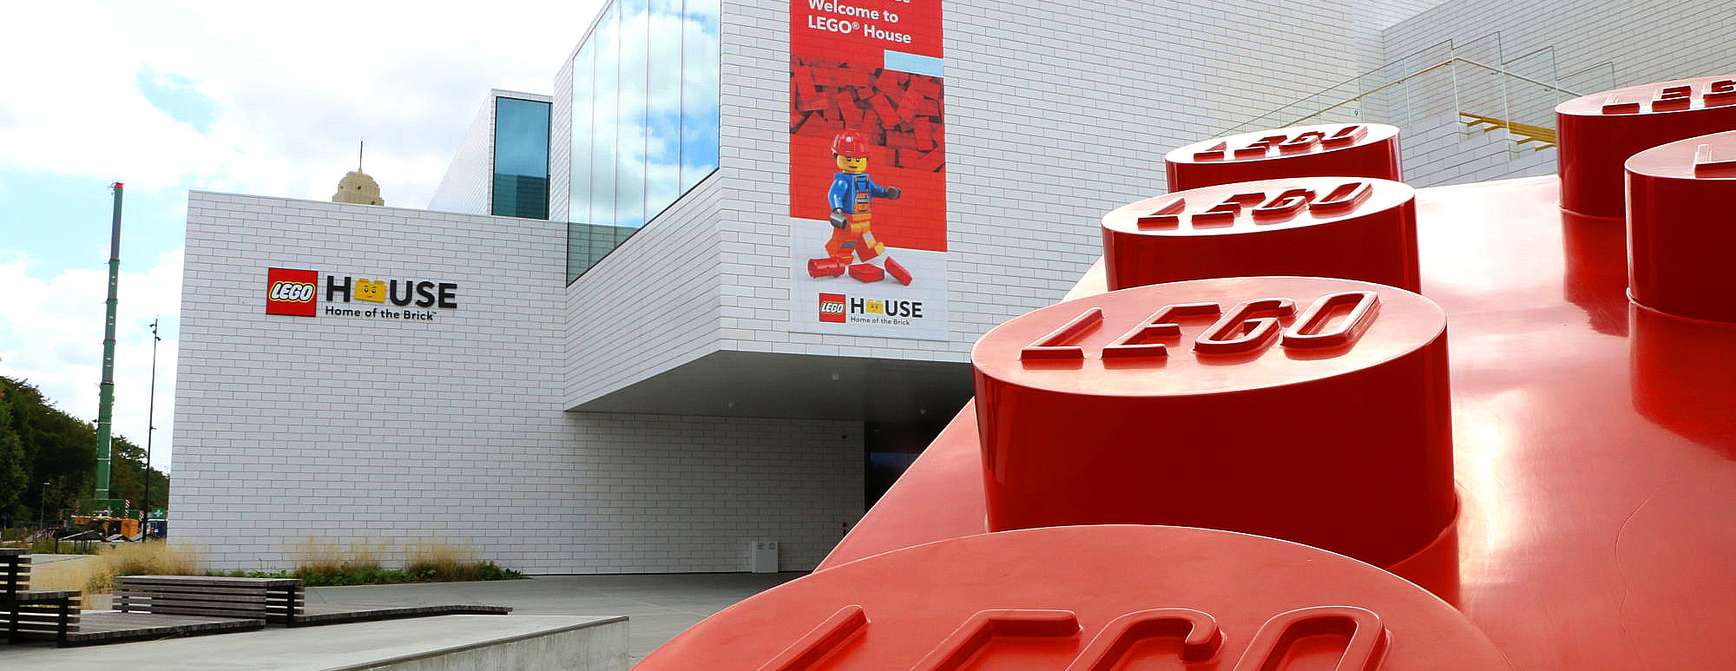 Utsiden av LEGO® House, med en stor rød LEGO®-klosse i forgrunnen.